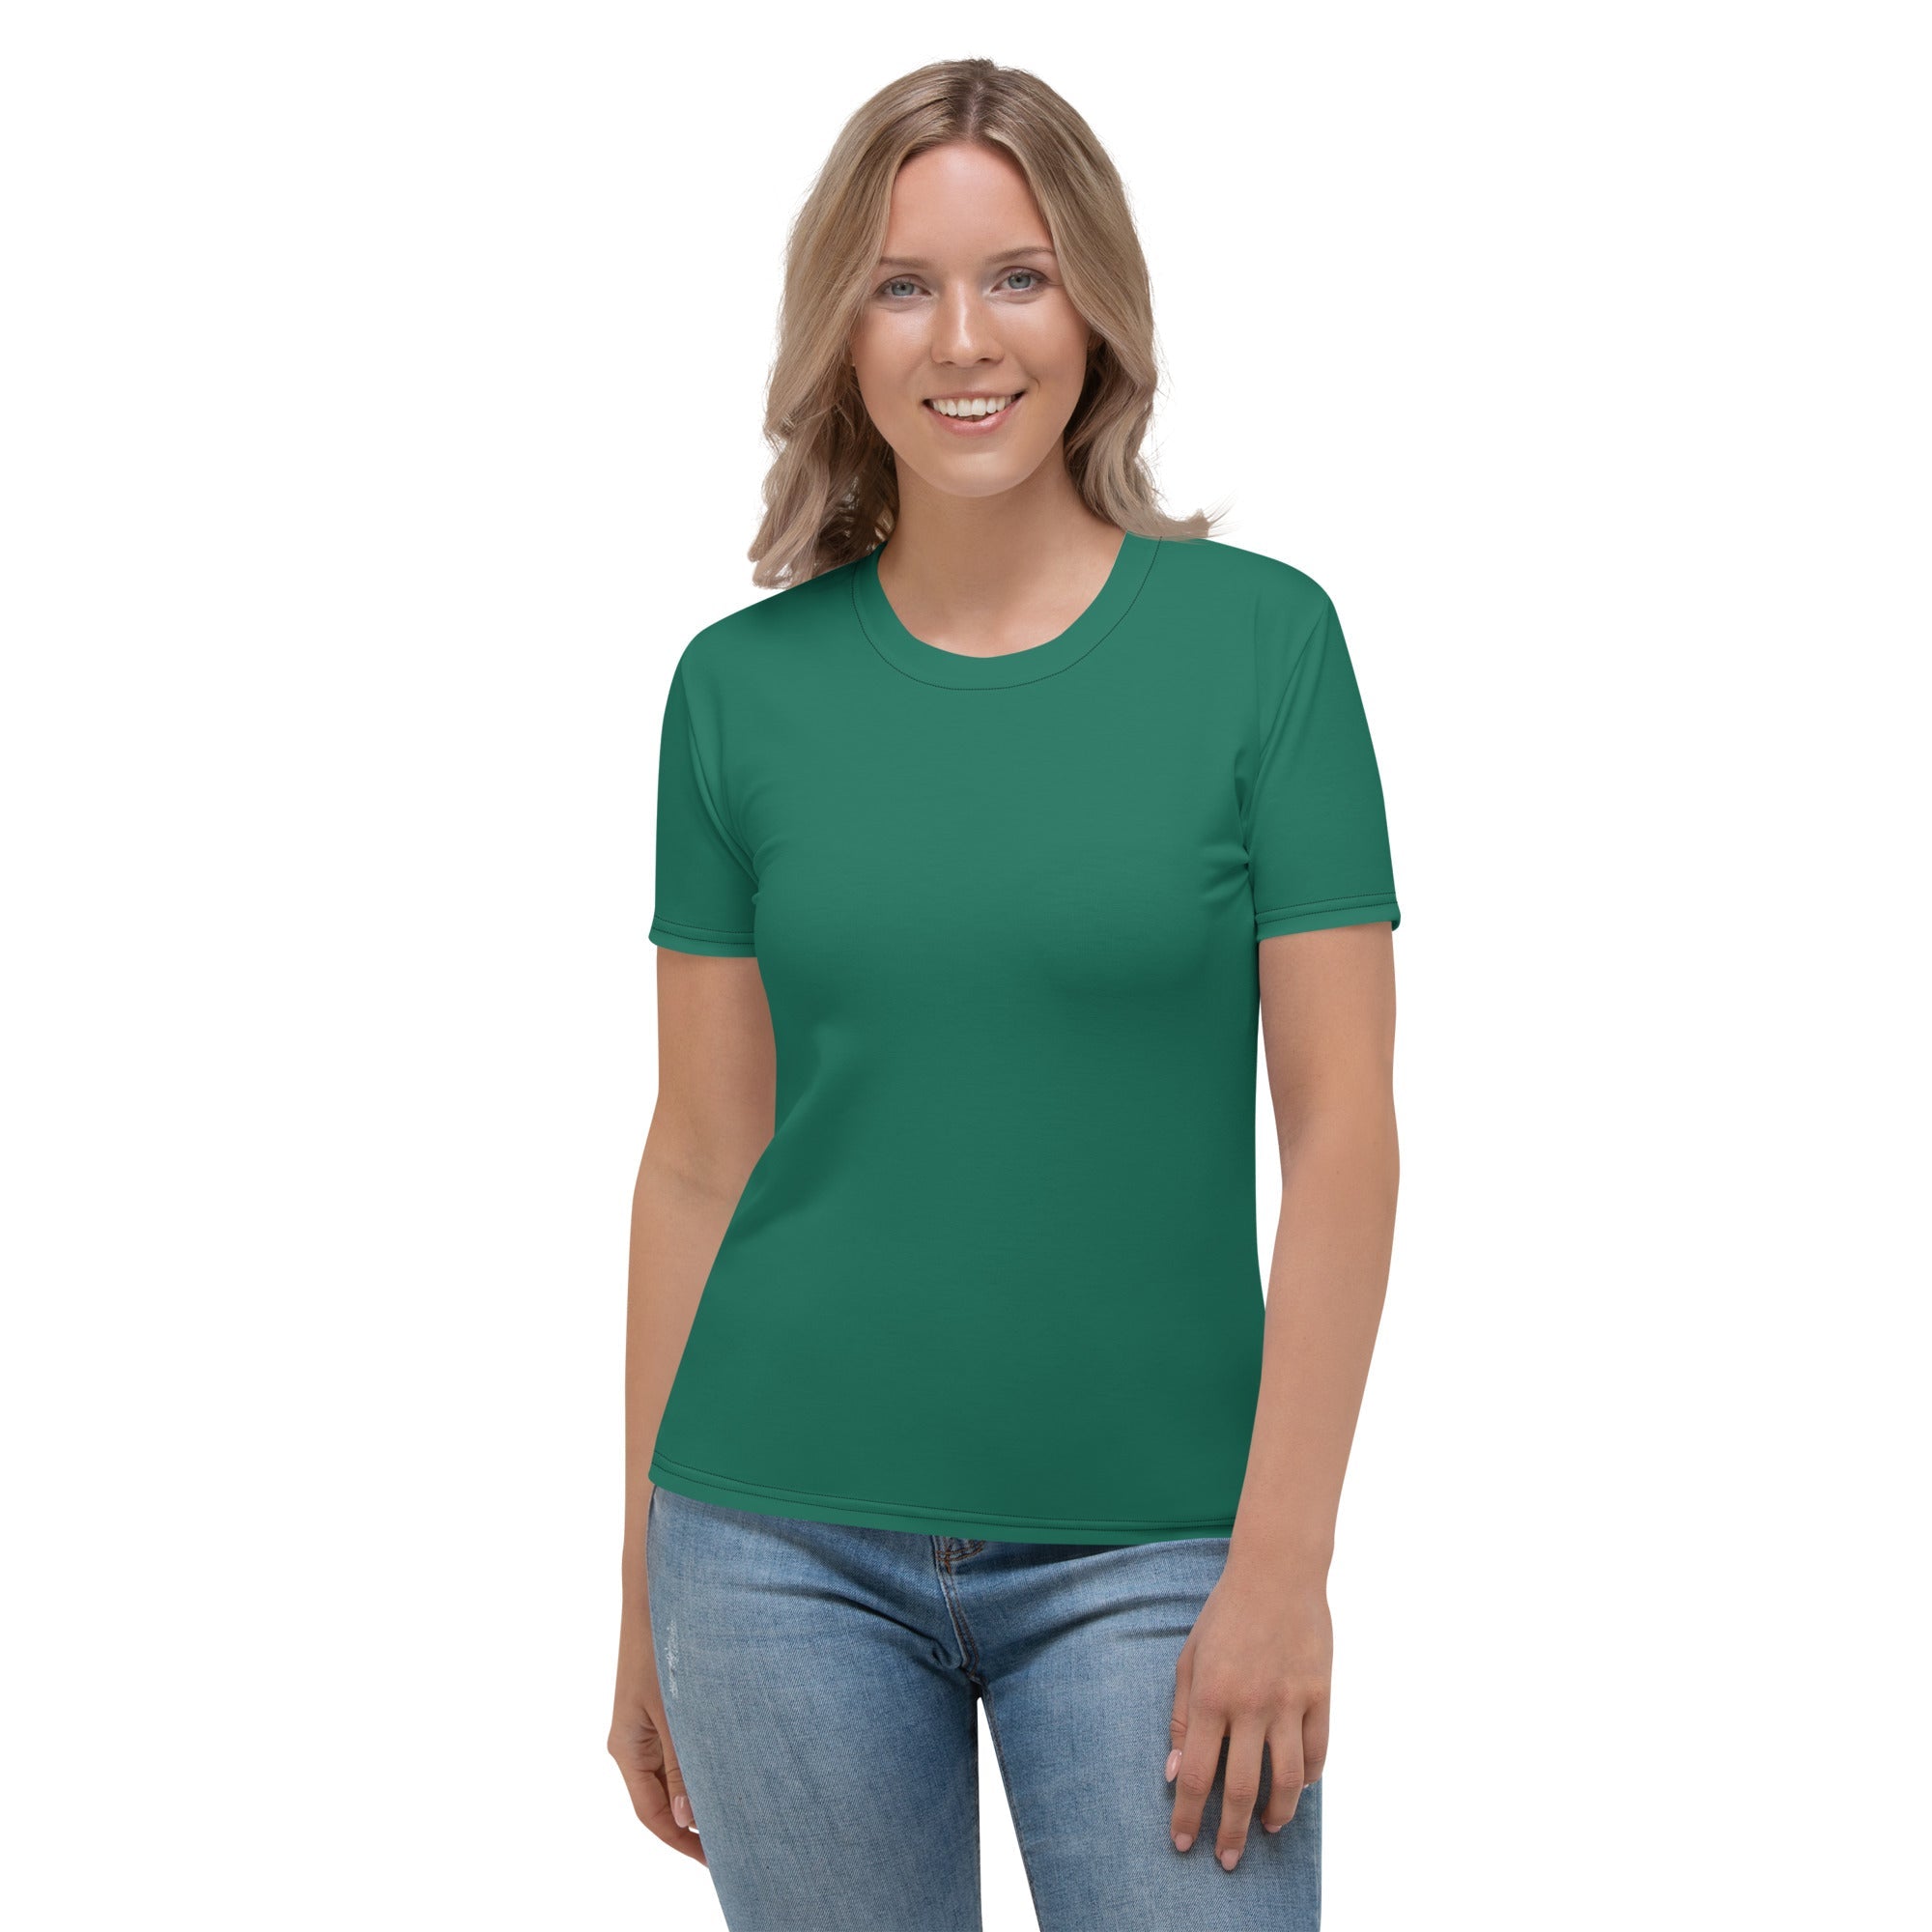 Emerald Green T-shirt